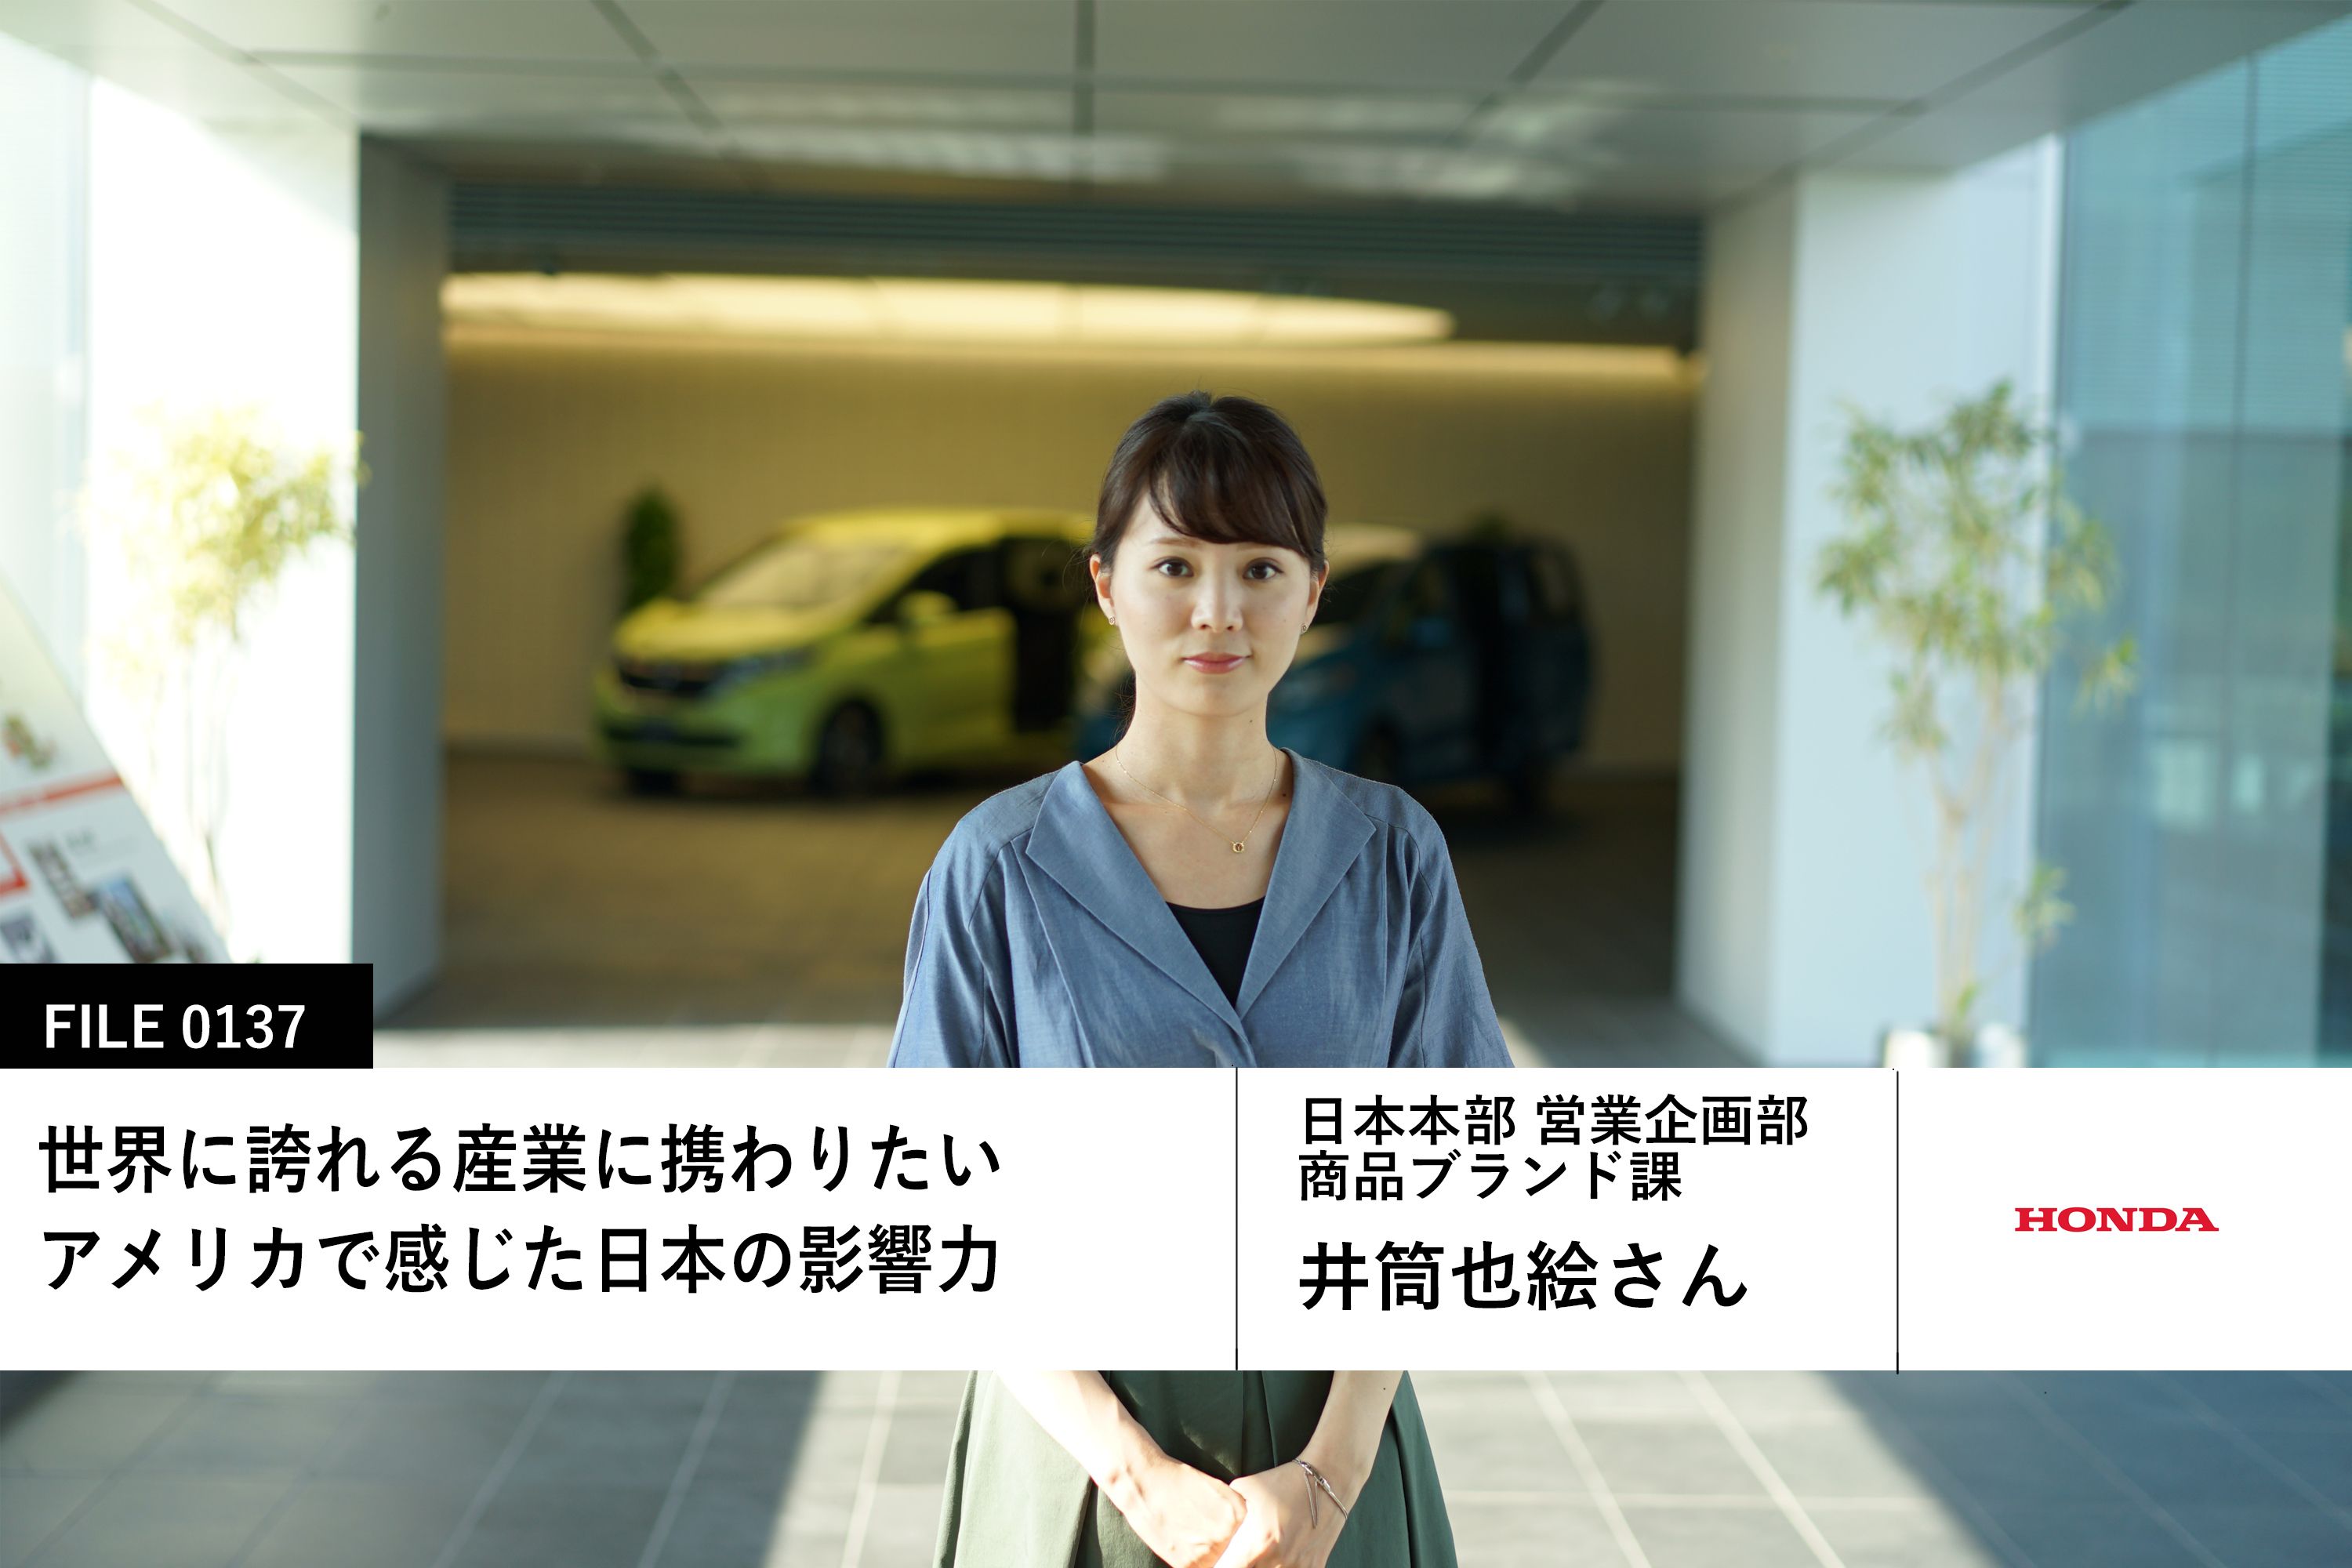 【Hondaの先輩社員】日本本部 営業企画部 商品ブランド課：井筒也絵さん